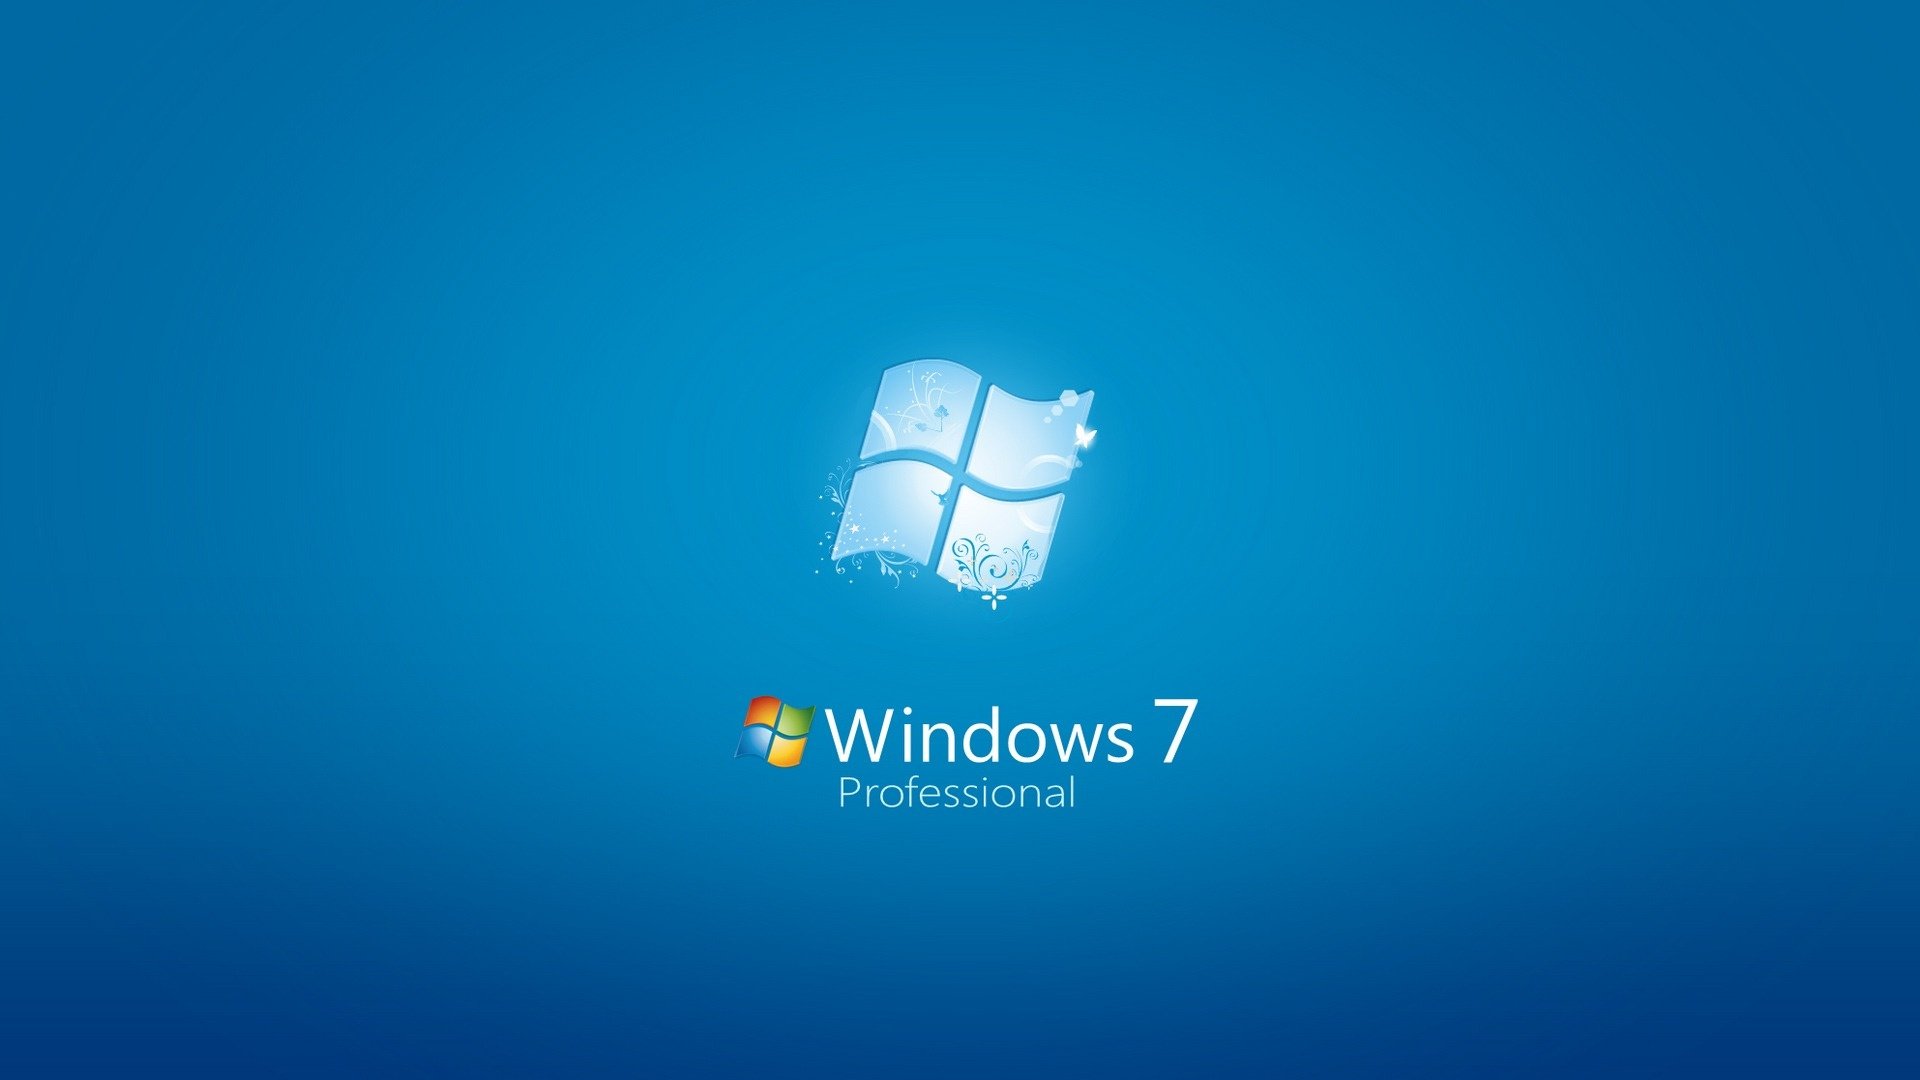 Τέλος στα Windows 7, έρχονται τα Windows 10